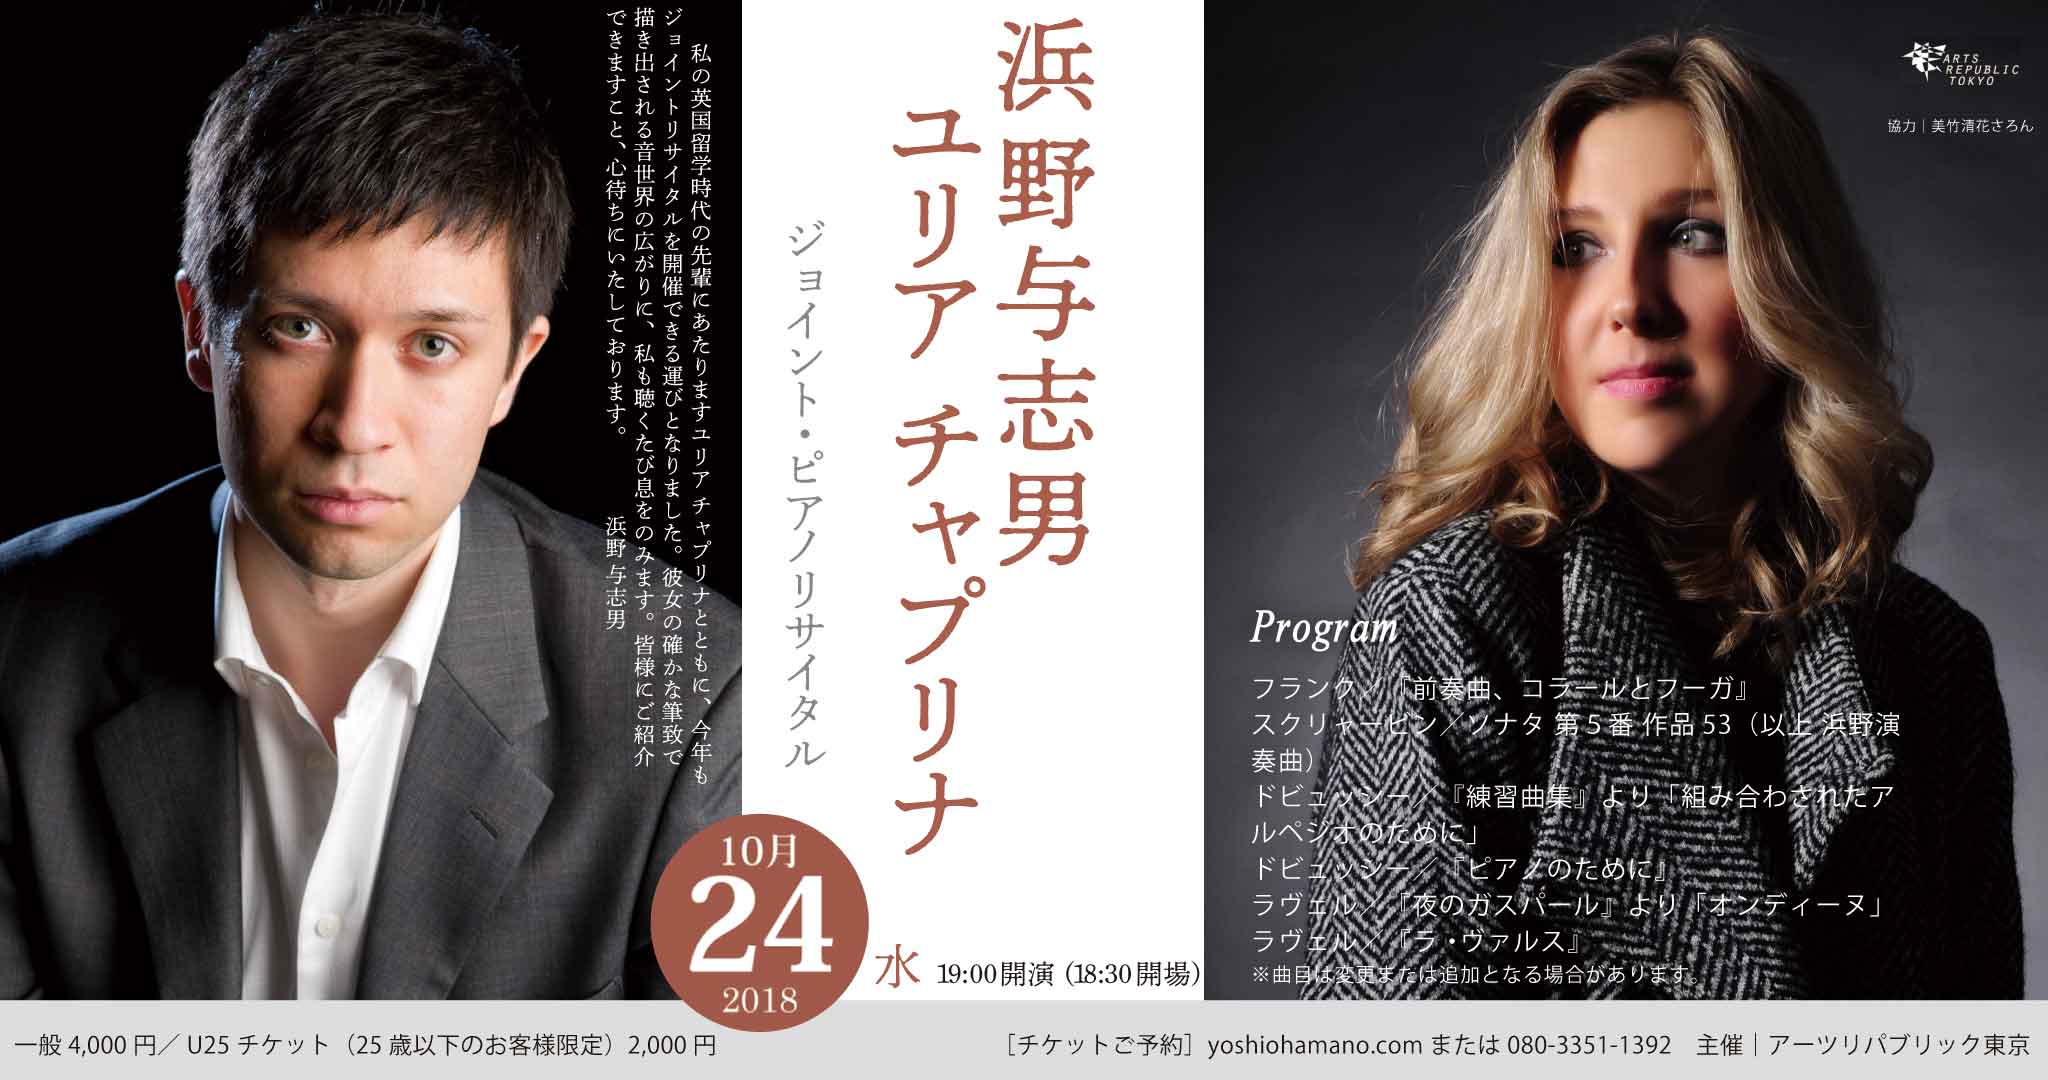 10 月24日 19:00~ 浜野与志男&ユリアチャプリナ ジョイントピアノコンサート